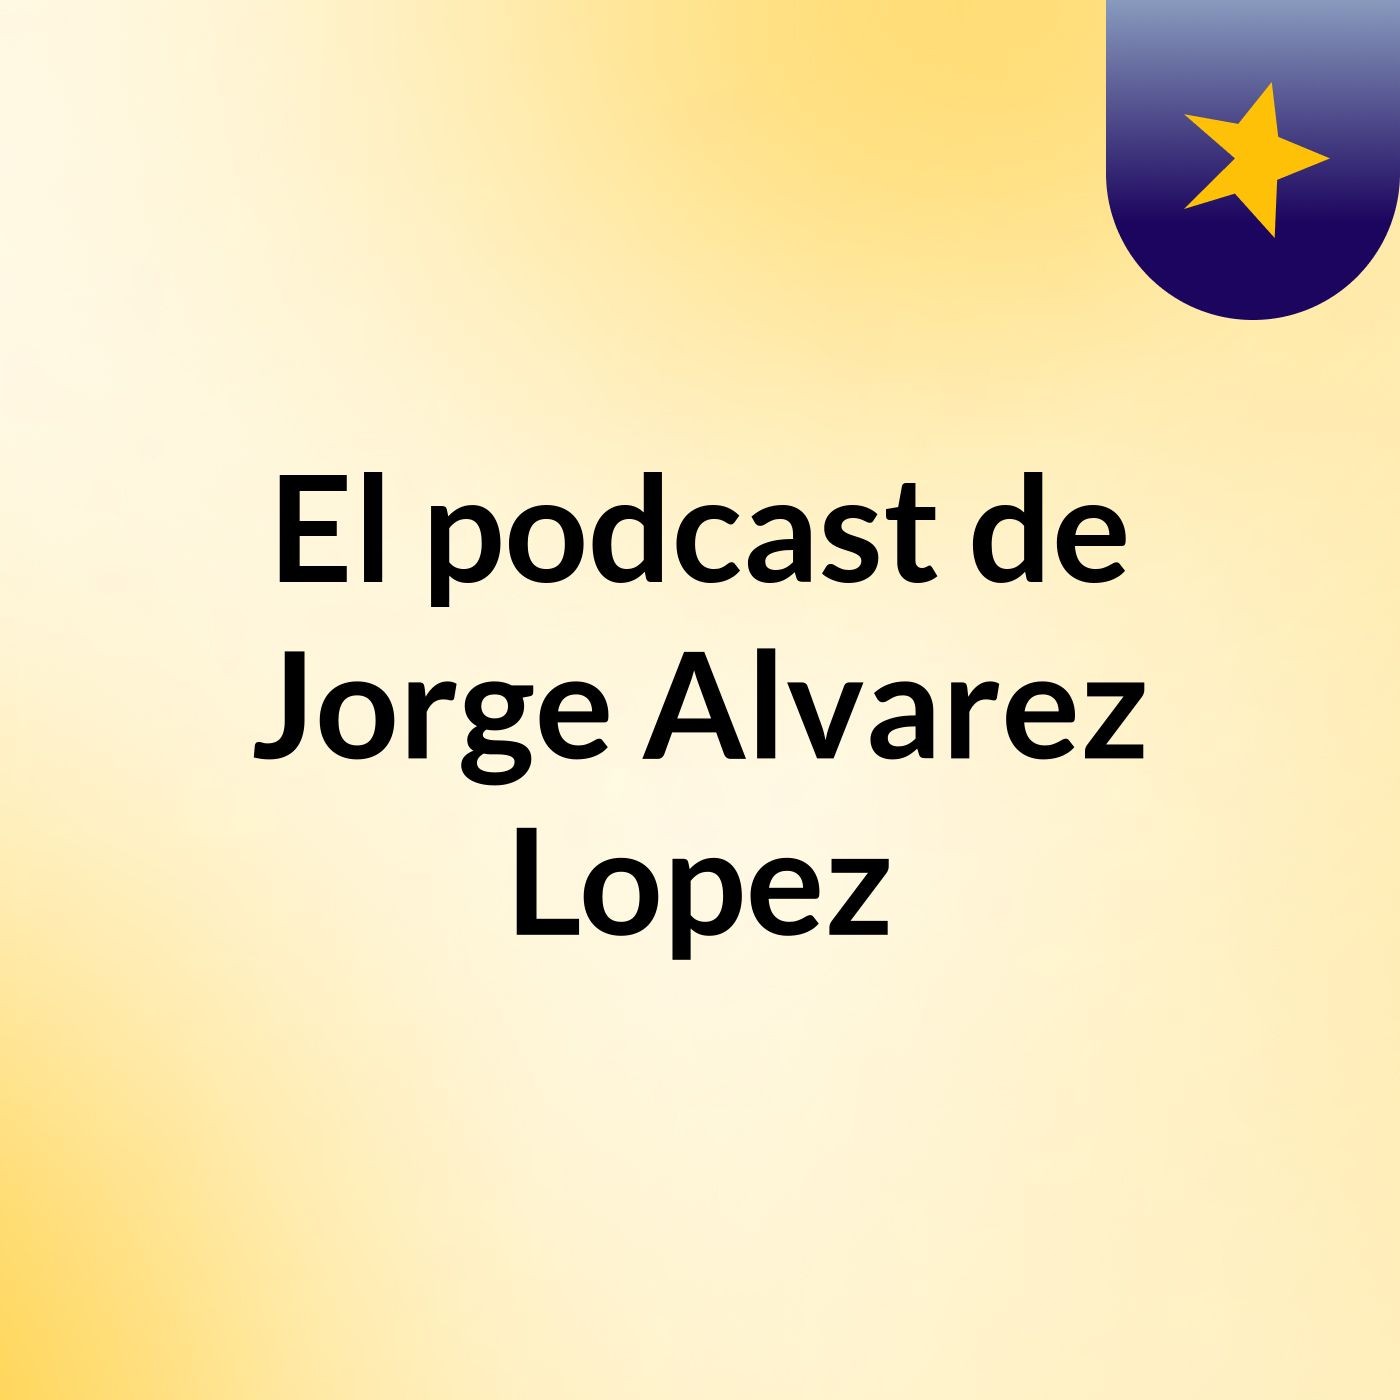 El podcast de Jorge Alvarez Lopez